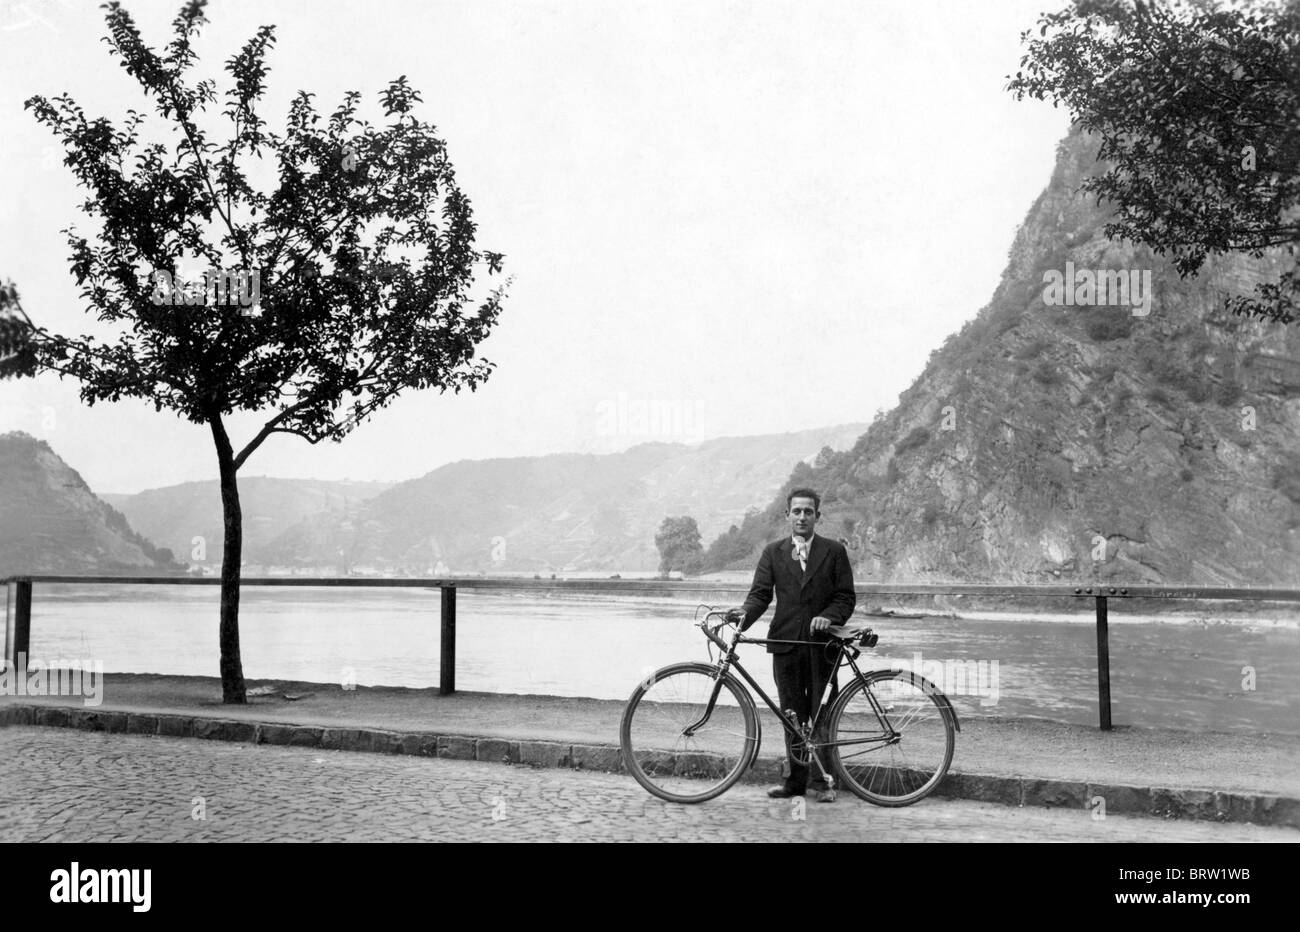 Excursión en bicicleta a lo largo del Rin, imagen histórica, ca. 1934 Foto de stock